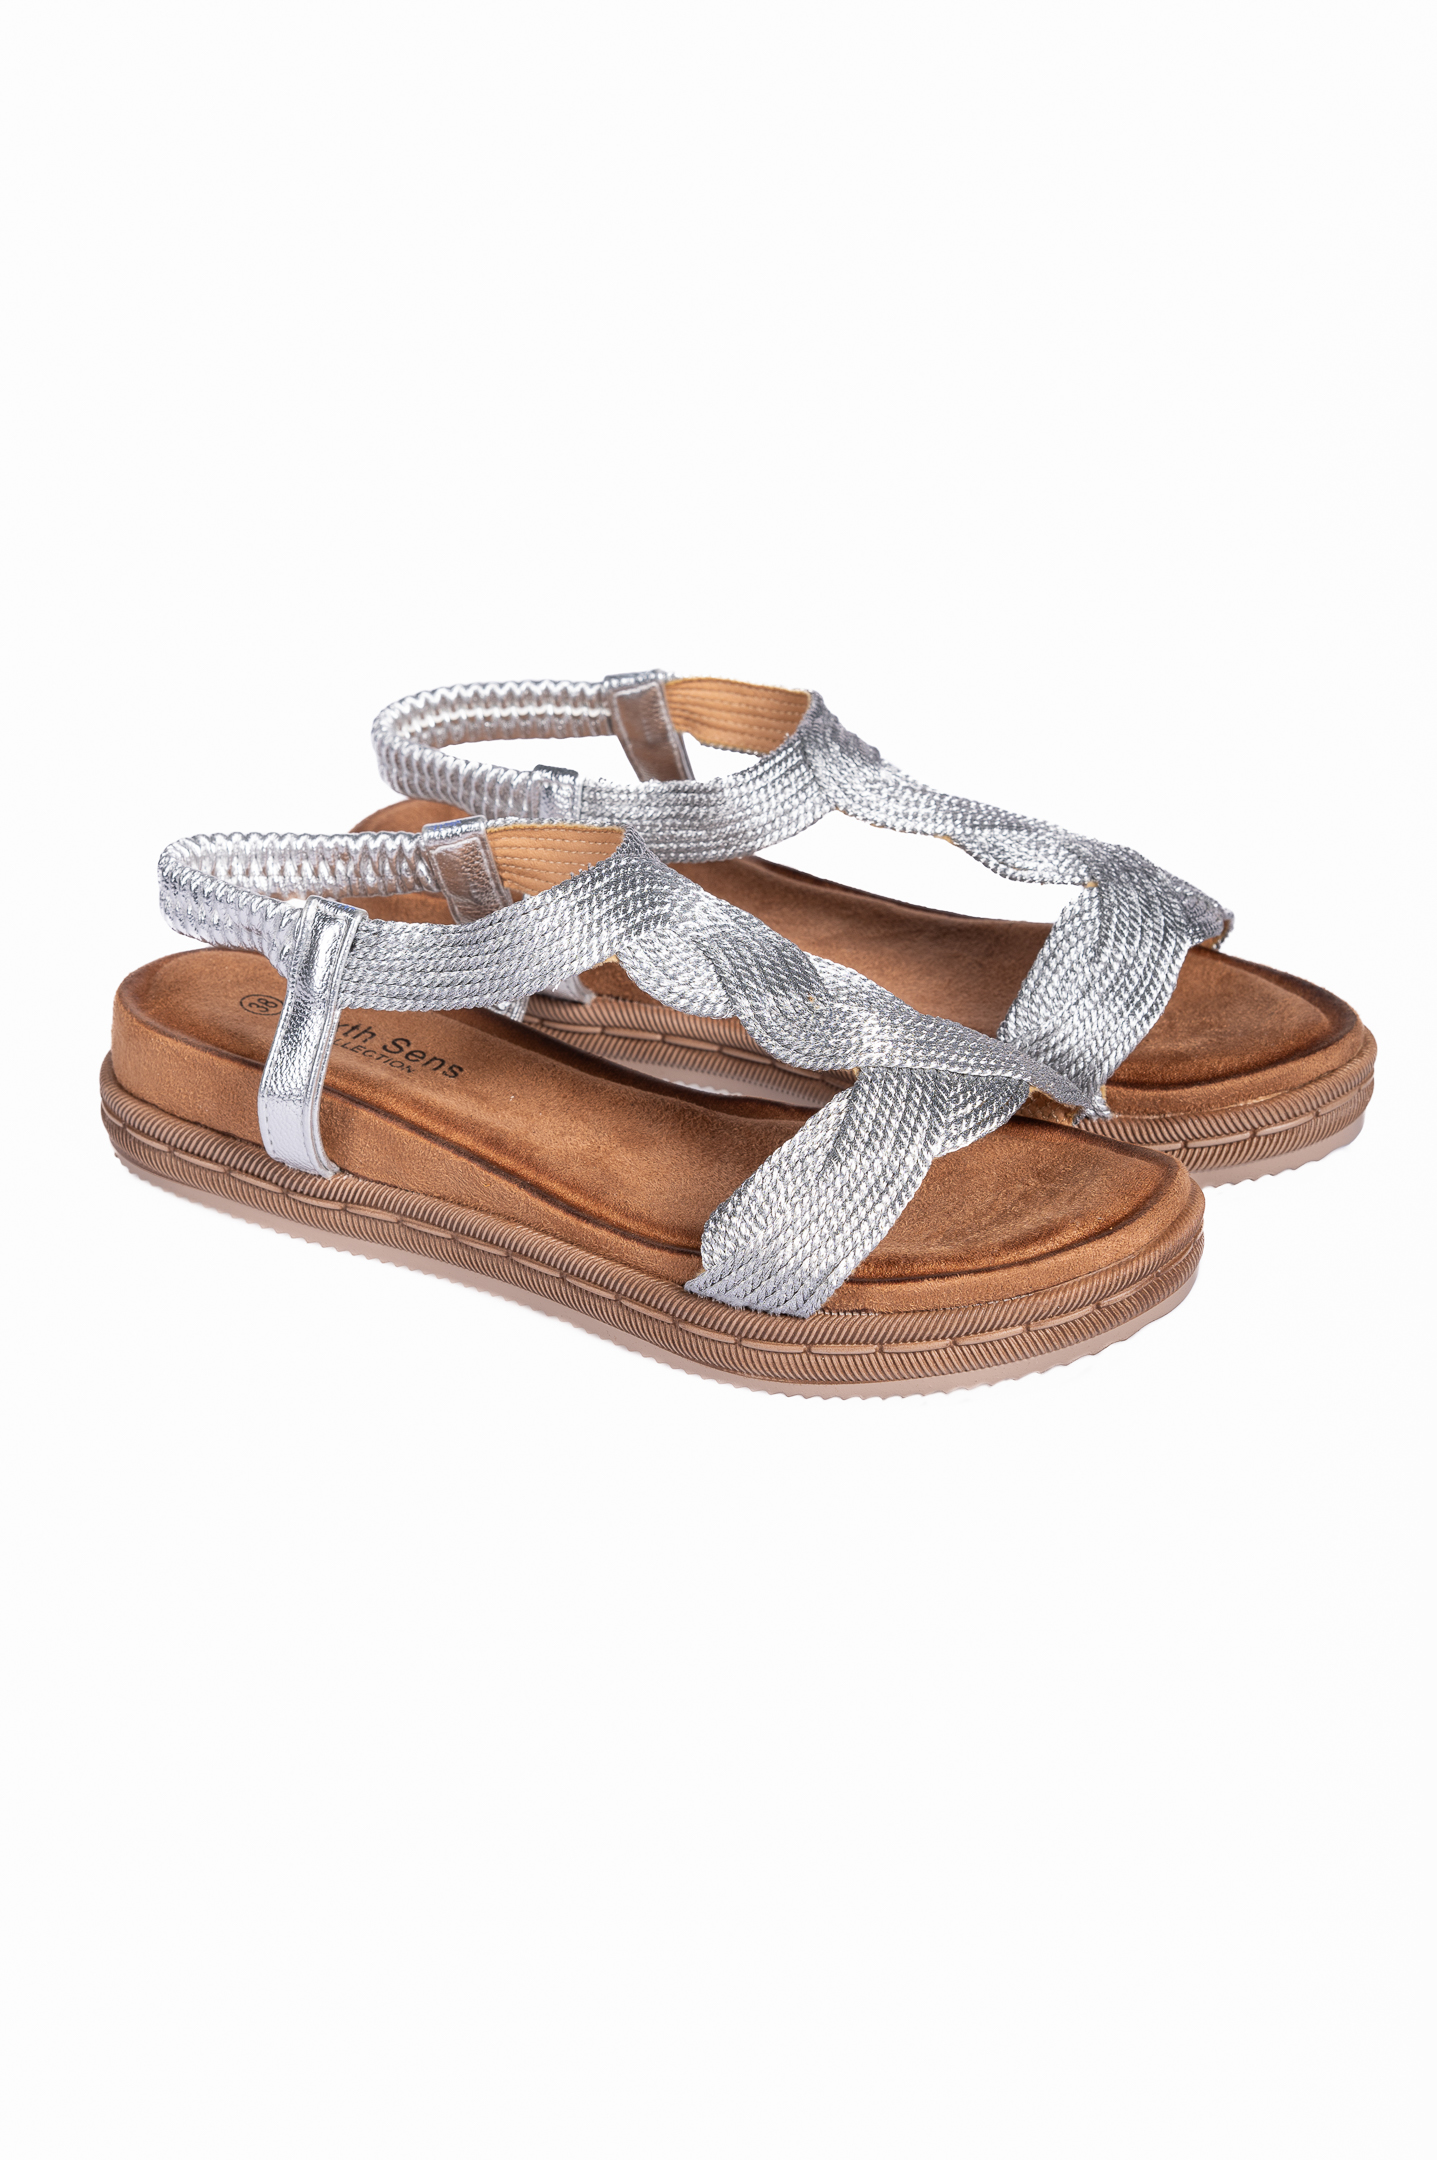 Παπούτσια > Σανδάλια Σανδάλια flatform με πλεκτό σχέδιο - Ασημί